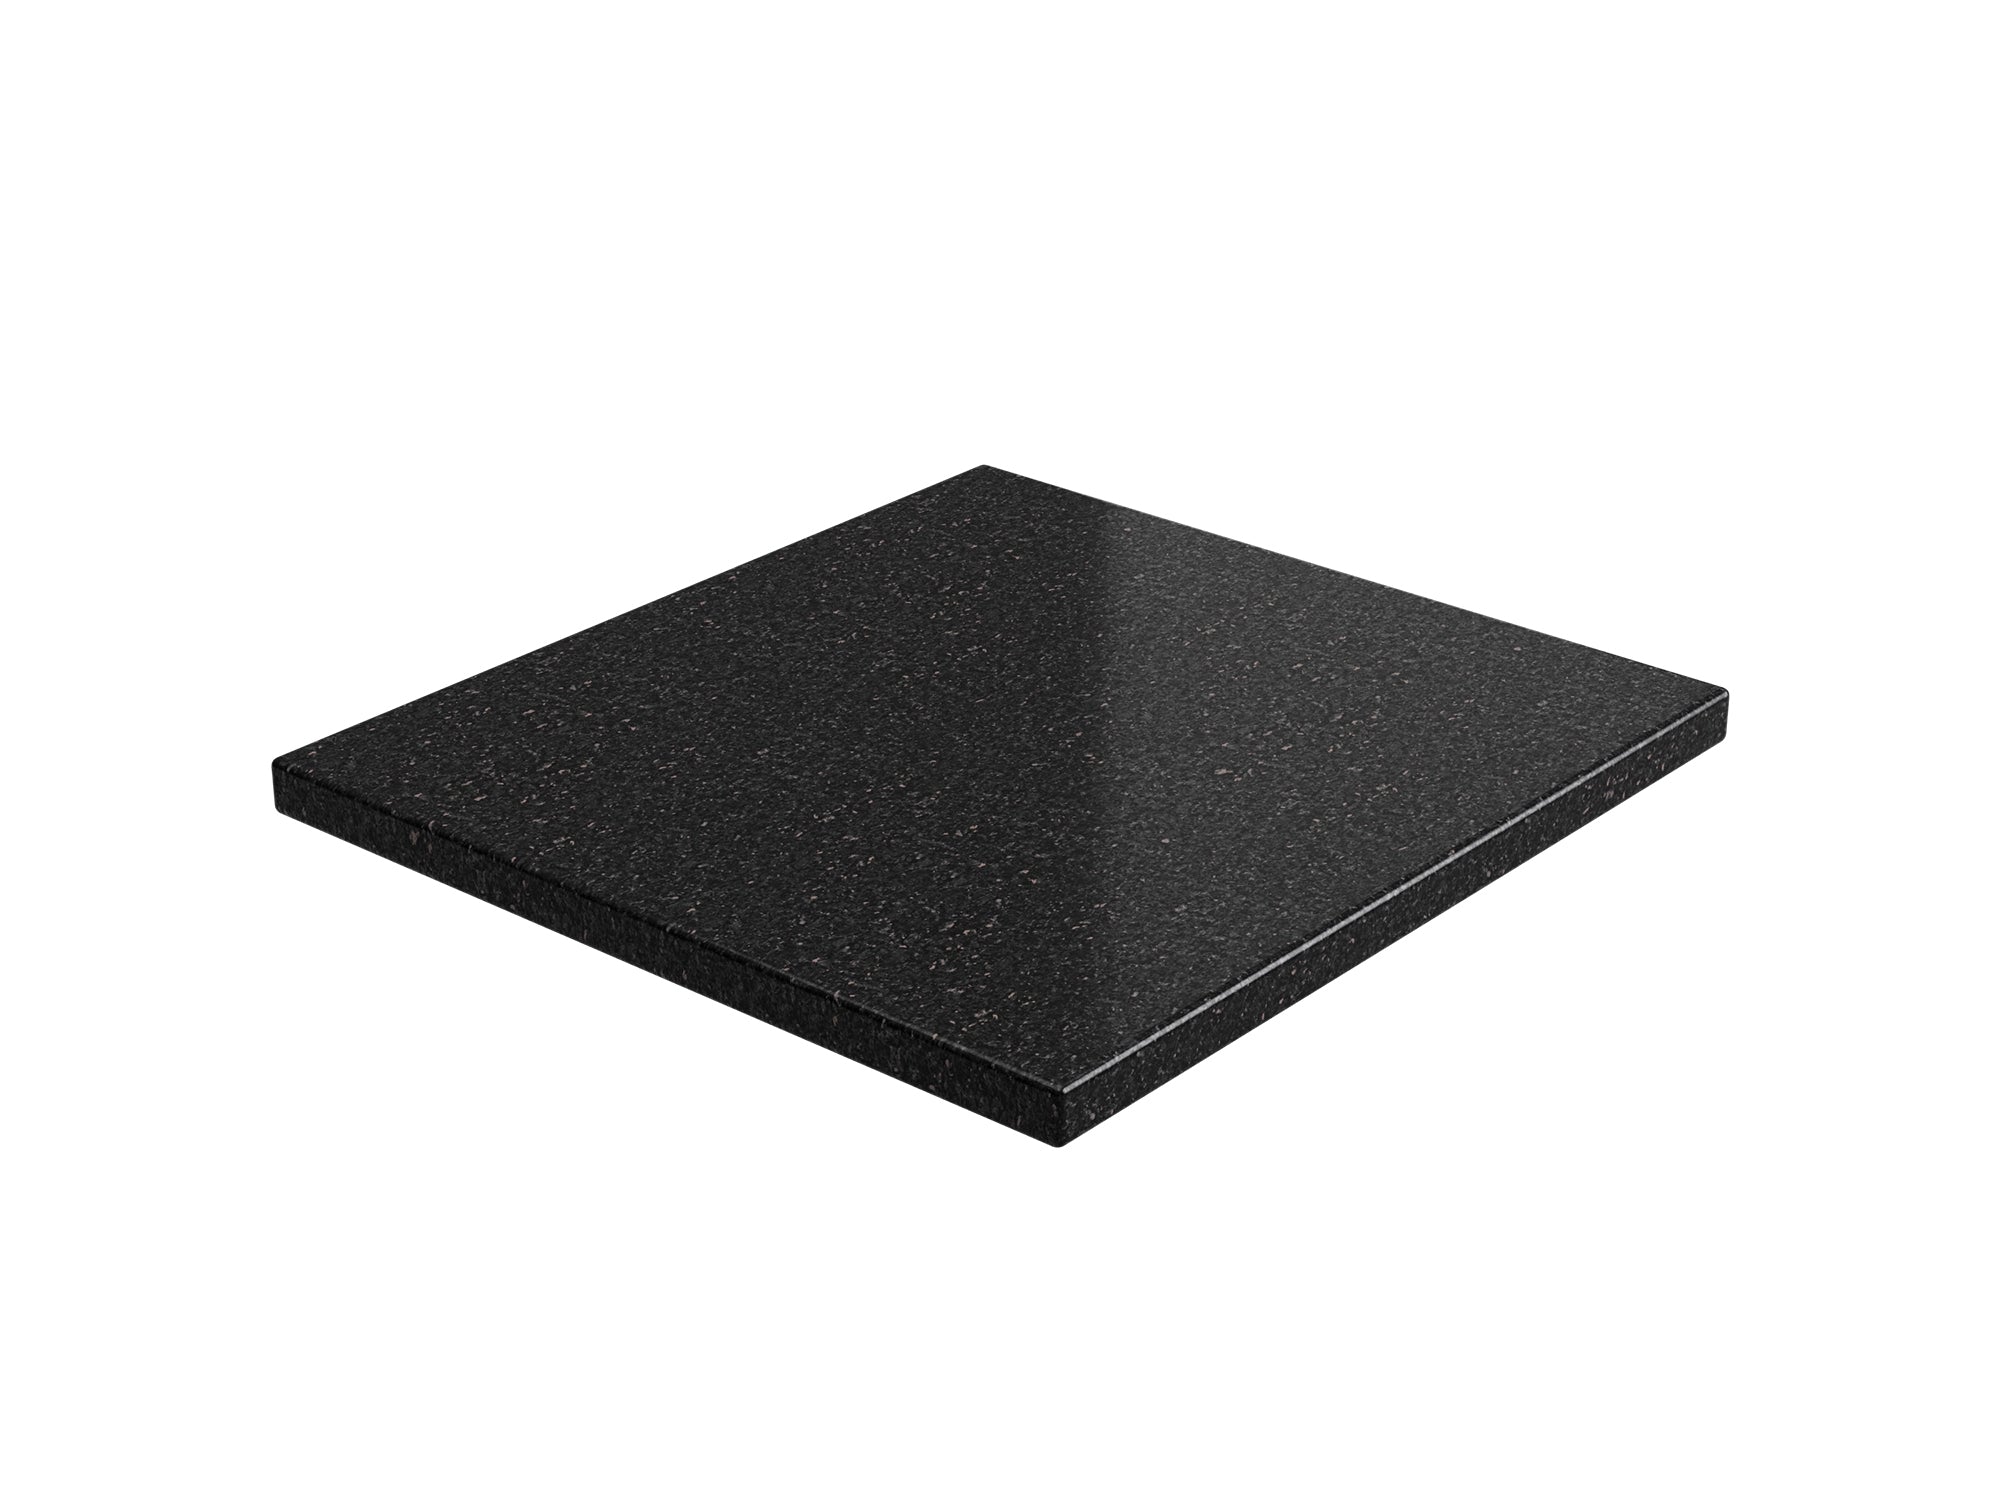 Home Bar Series Granite Countertop (1 x 21 in. Granite Countertop) - Black Galaxy